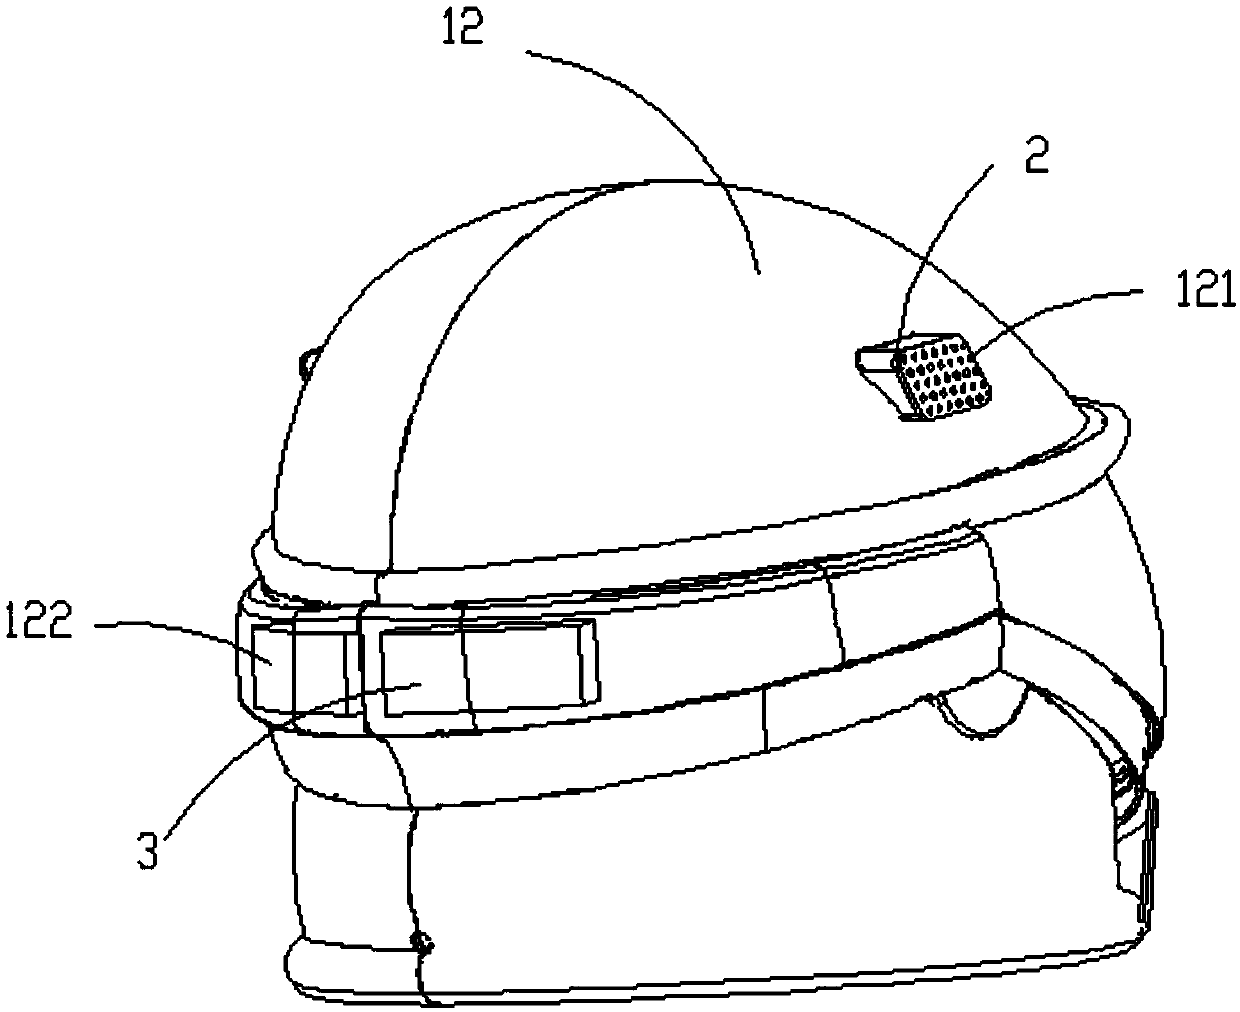 Sound insulation helmet with KTV function